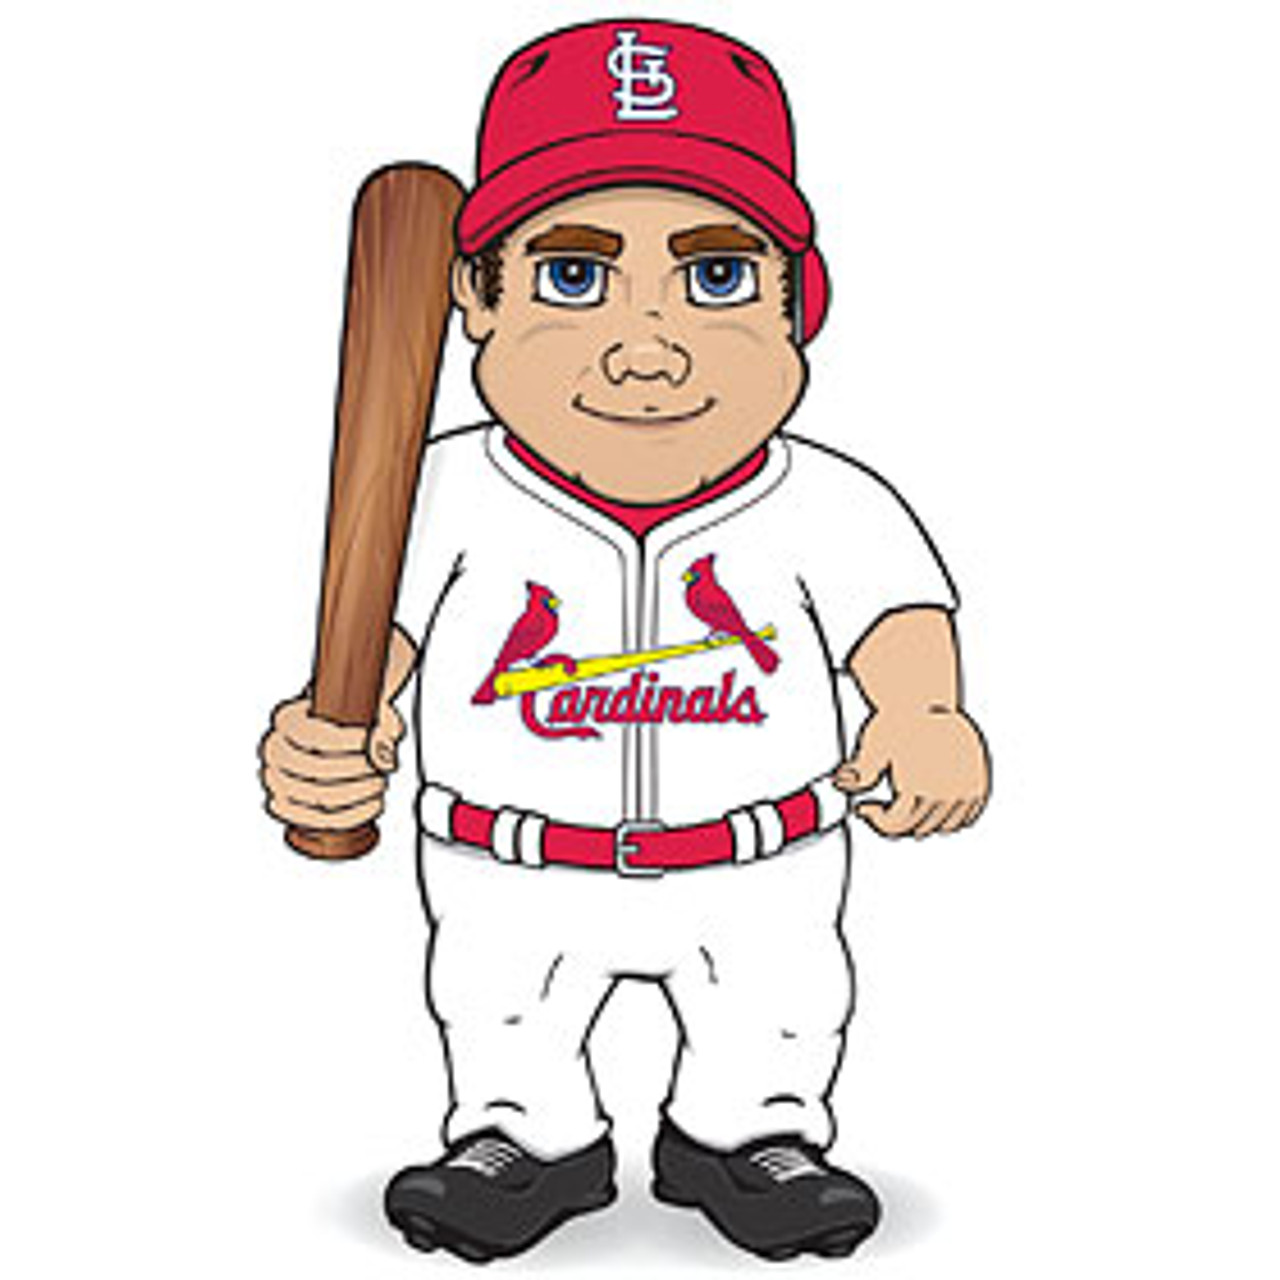 St. Louis Cardinals Legacy Uniform Plaque